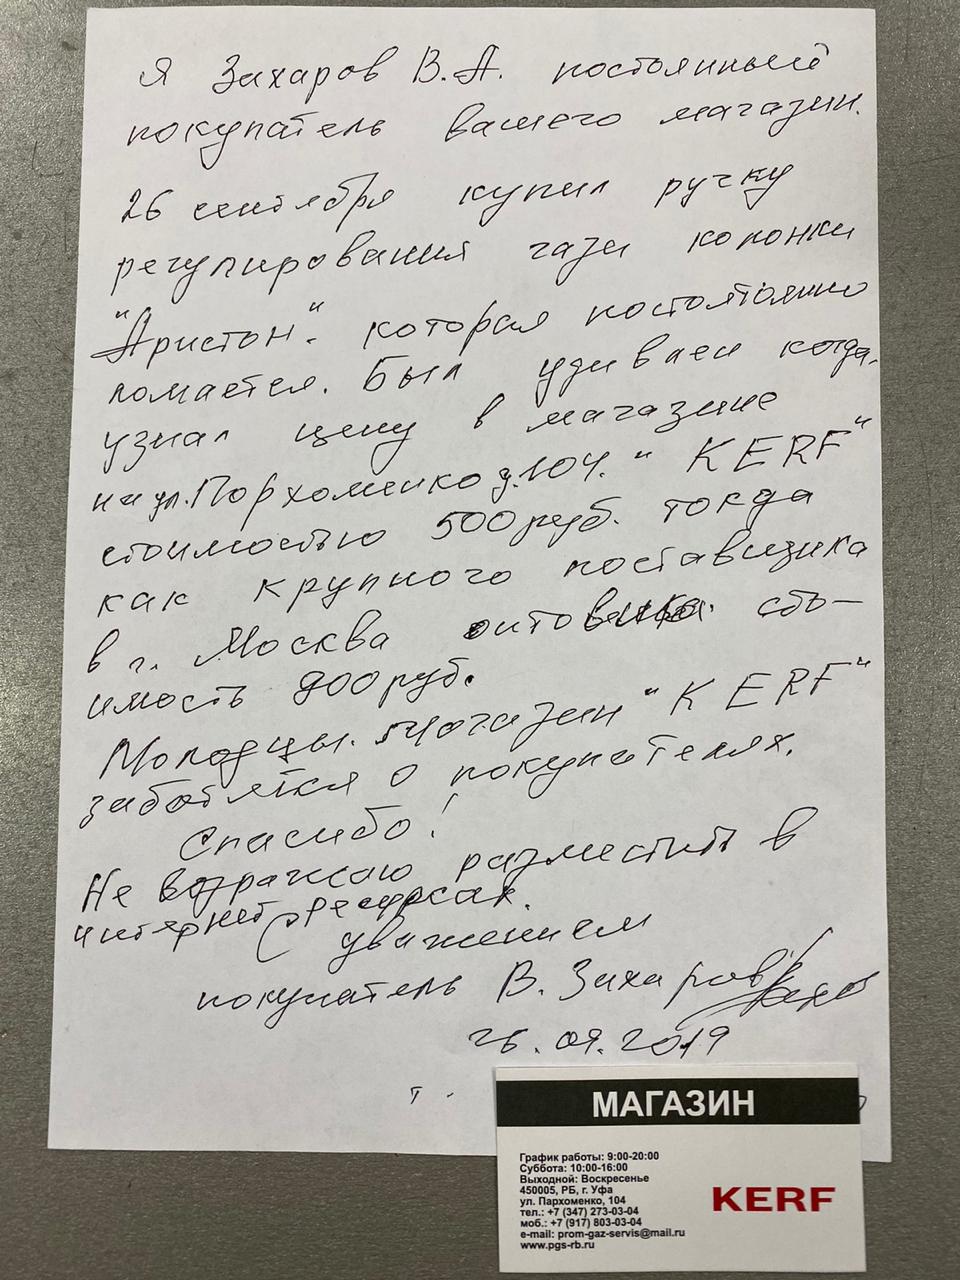 Отзыв ПромГазСервис от Захарова В.А.